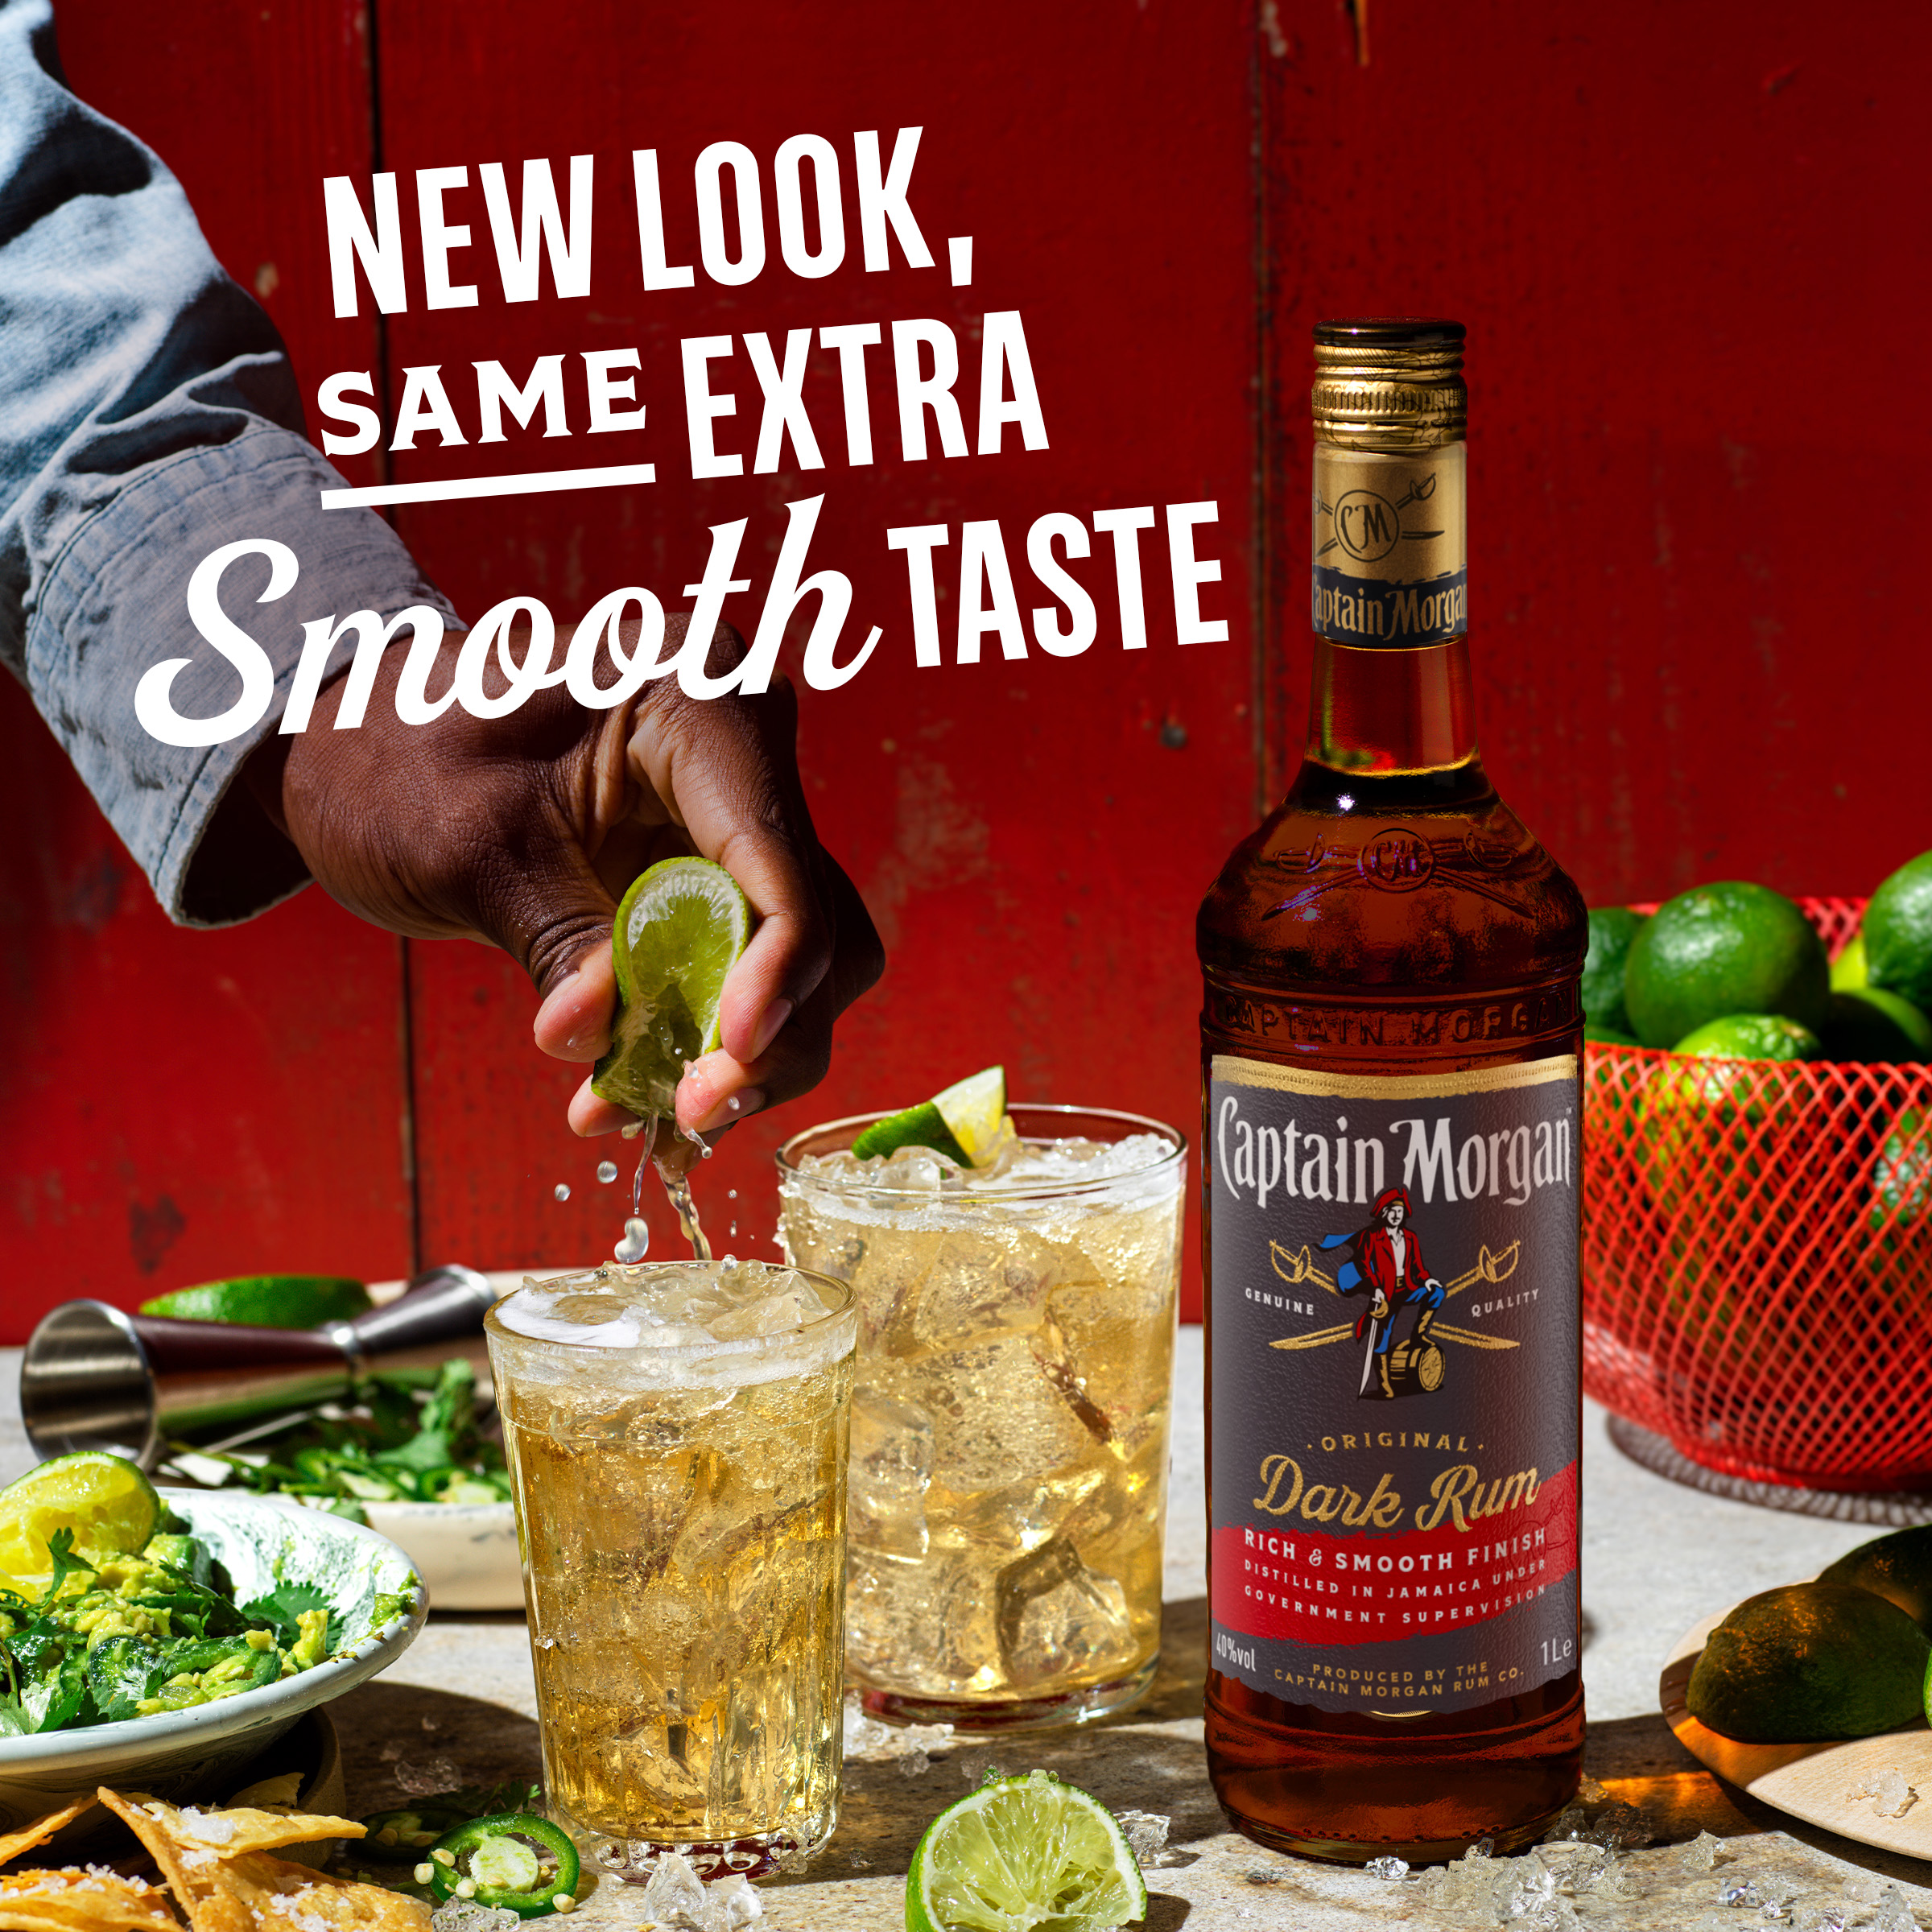 Captain Morgan Original Rum The Orange | Cocktail & Juice Bar Recipe